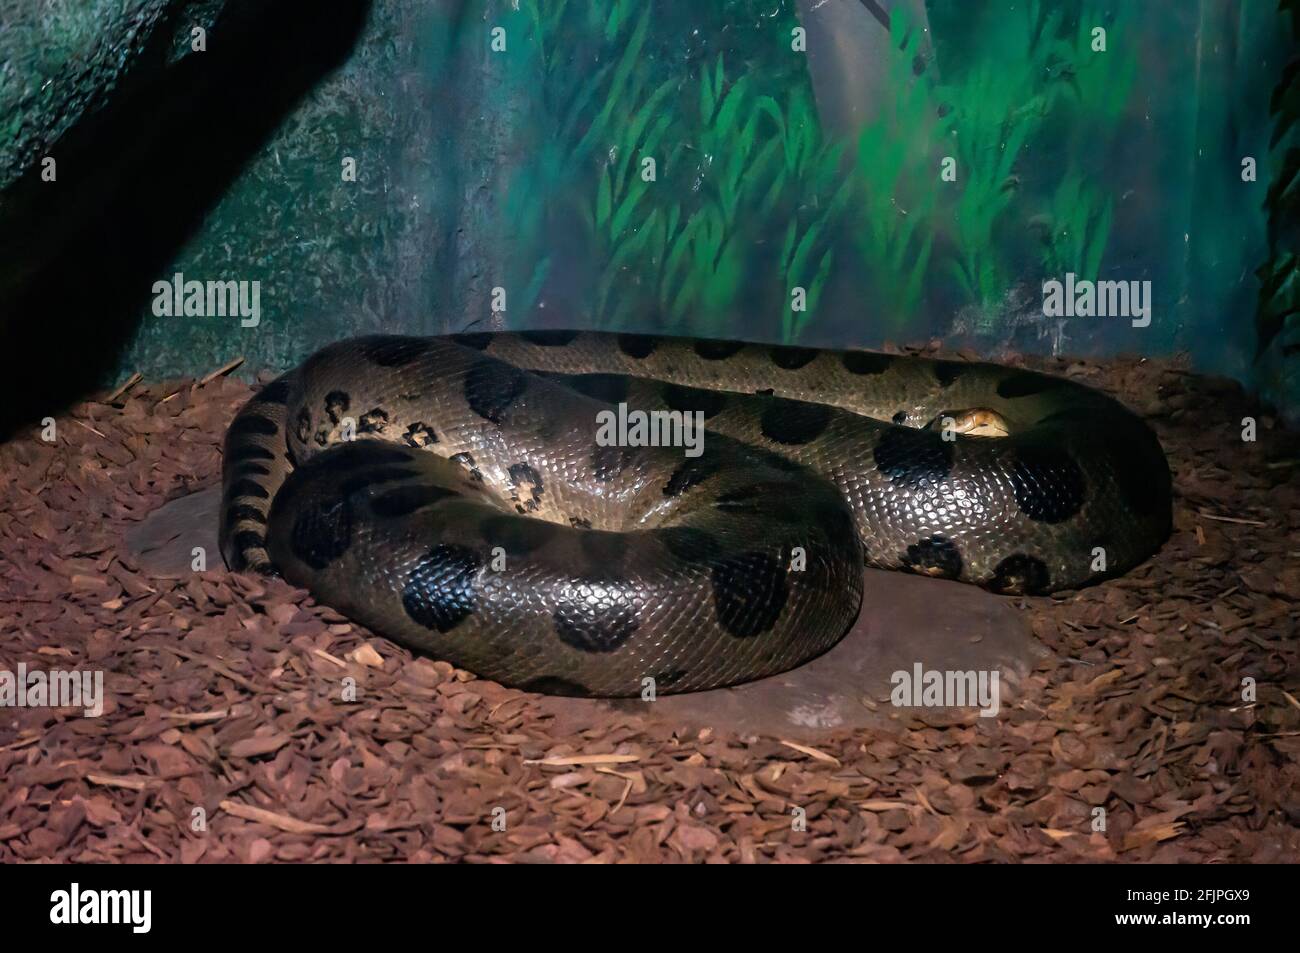 Eine grüne Anakonda (Eunectes murinus, Sucuri - die schwerste und am längsten bekannte Schlangenart), die in seinem Gehege im Aquarium von Sao Paulo niedergelegt ist. Stockfoto